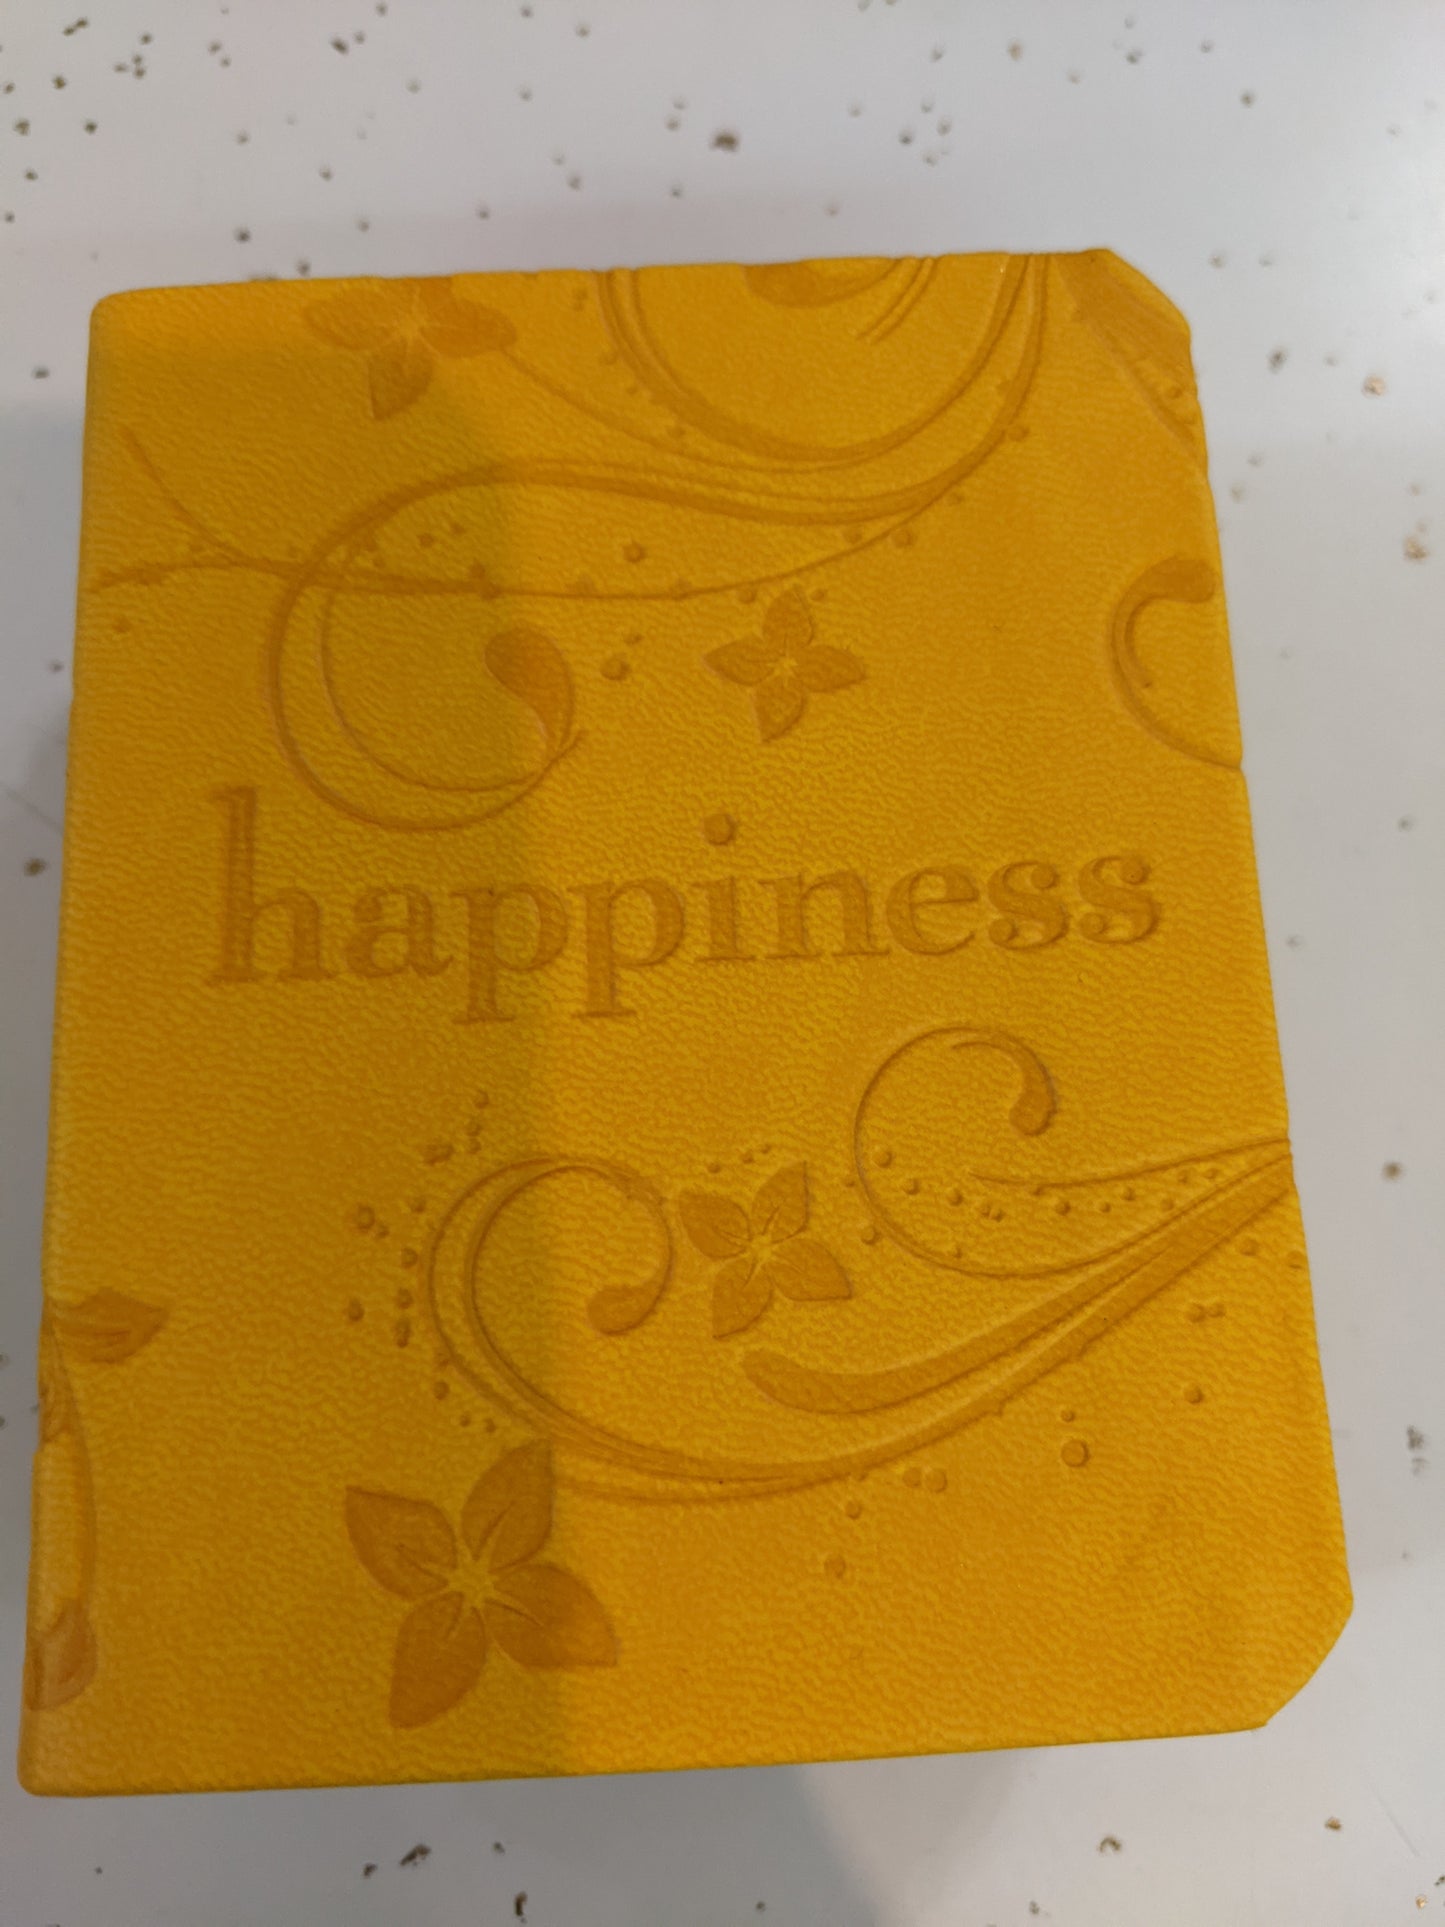 Happiness - mini book